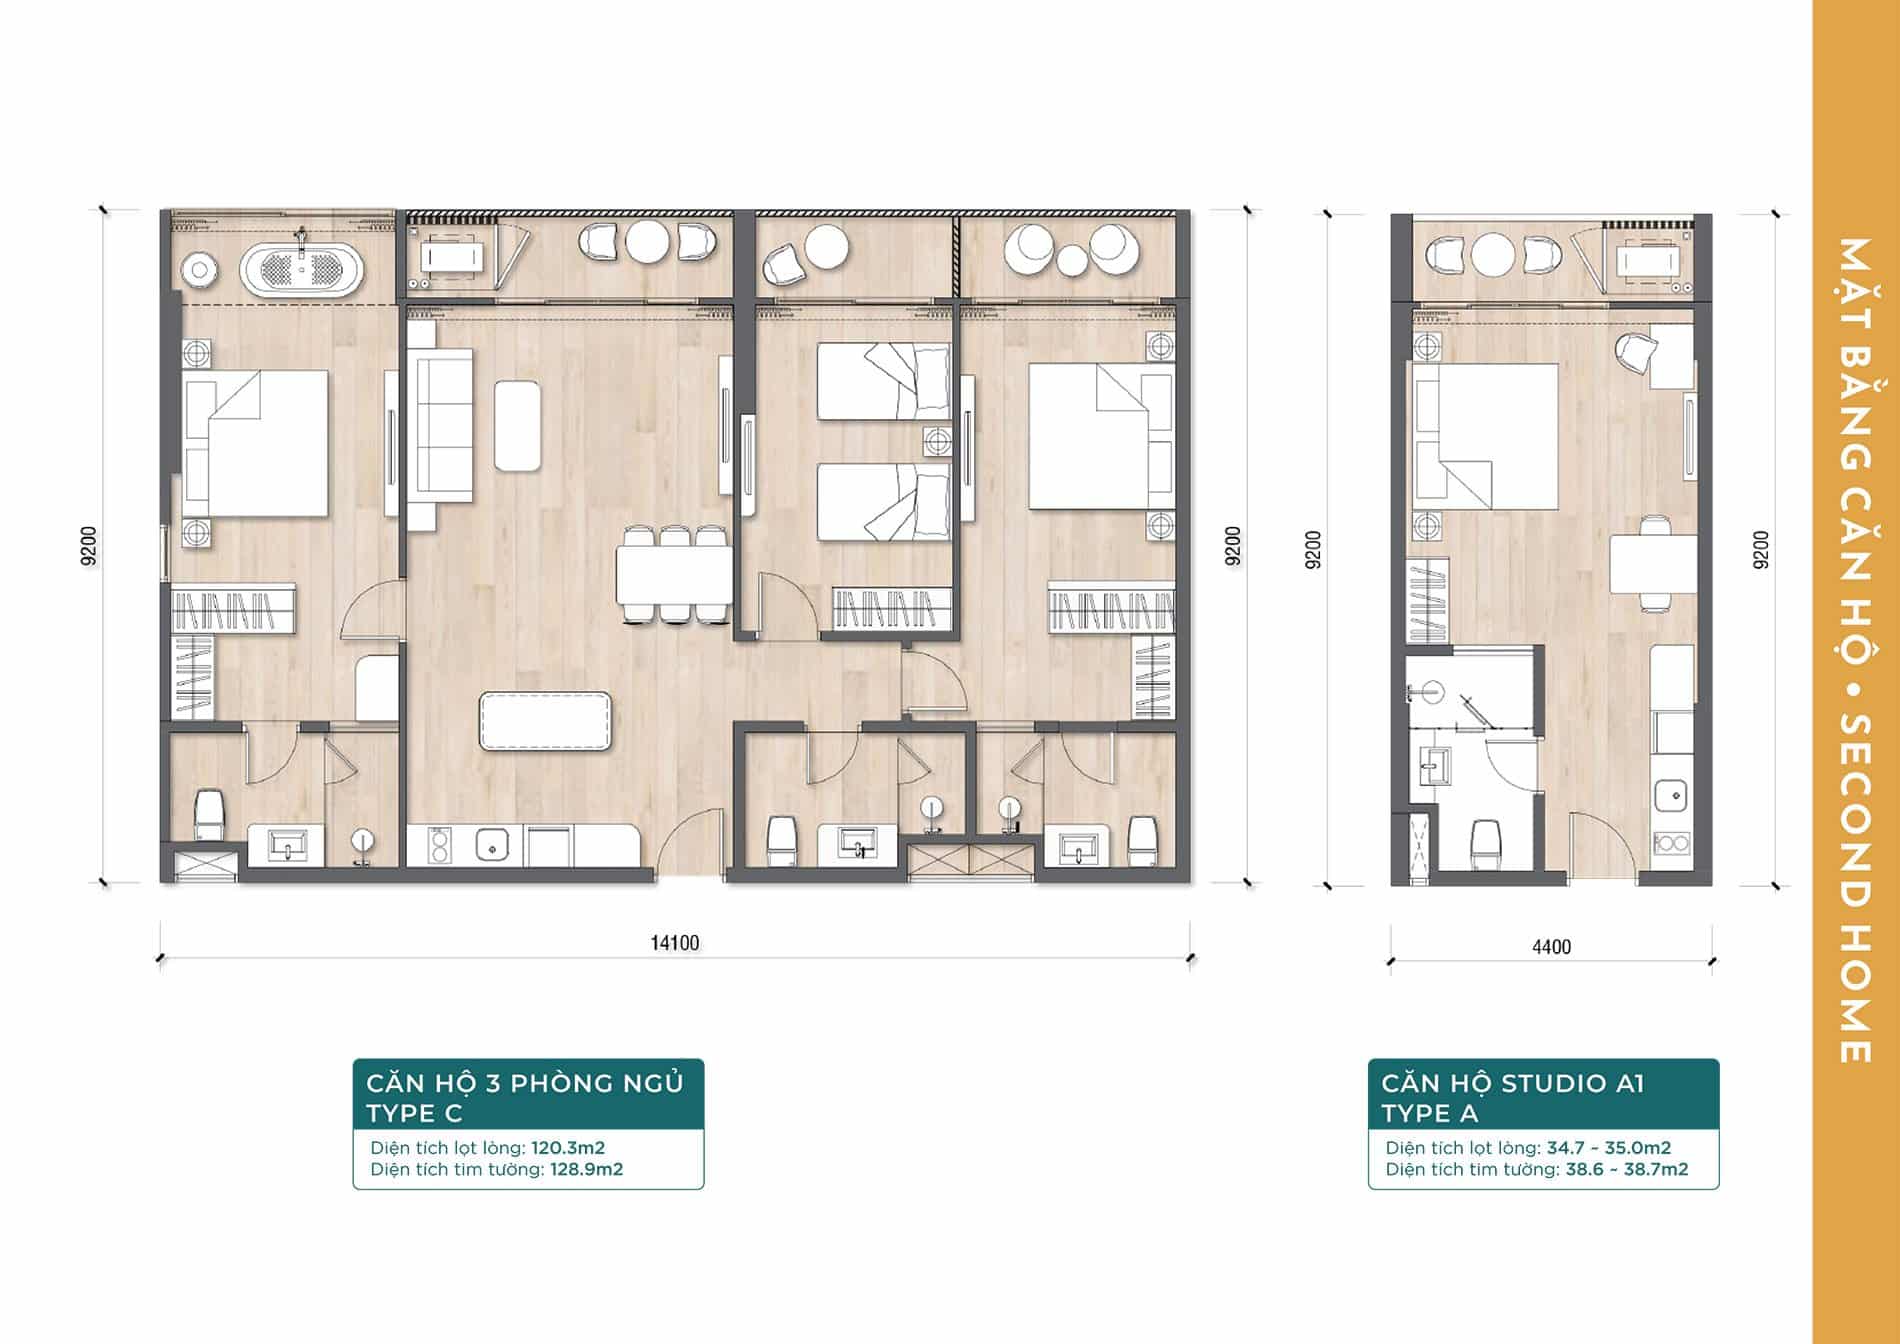 Layout thiết kế căn hộ 3 phòng ngủ Type C và căn hộ studio A1 Type A.